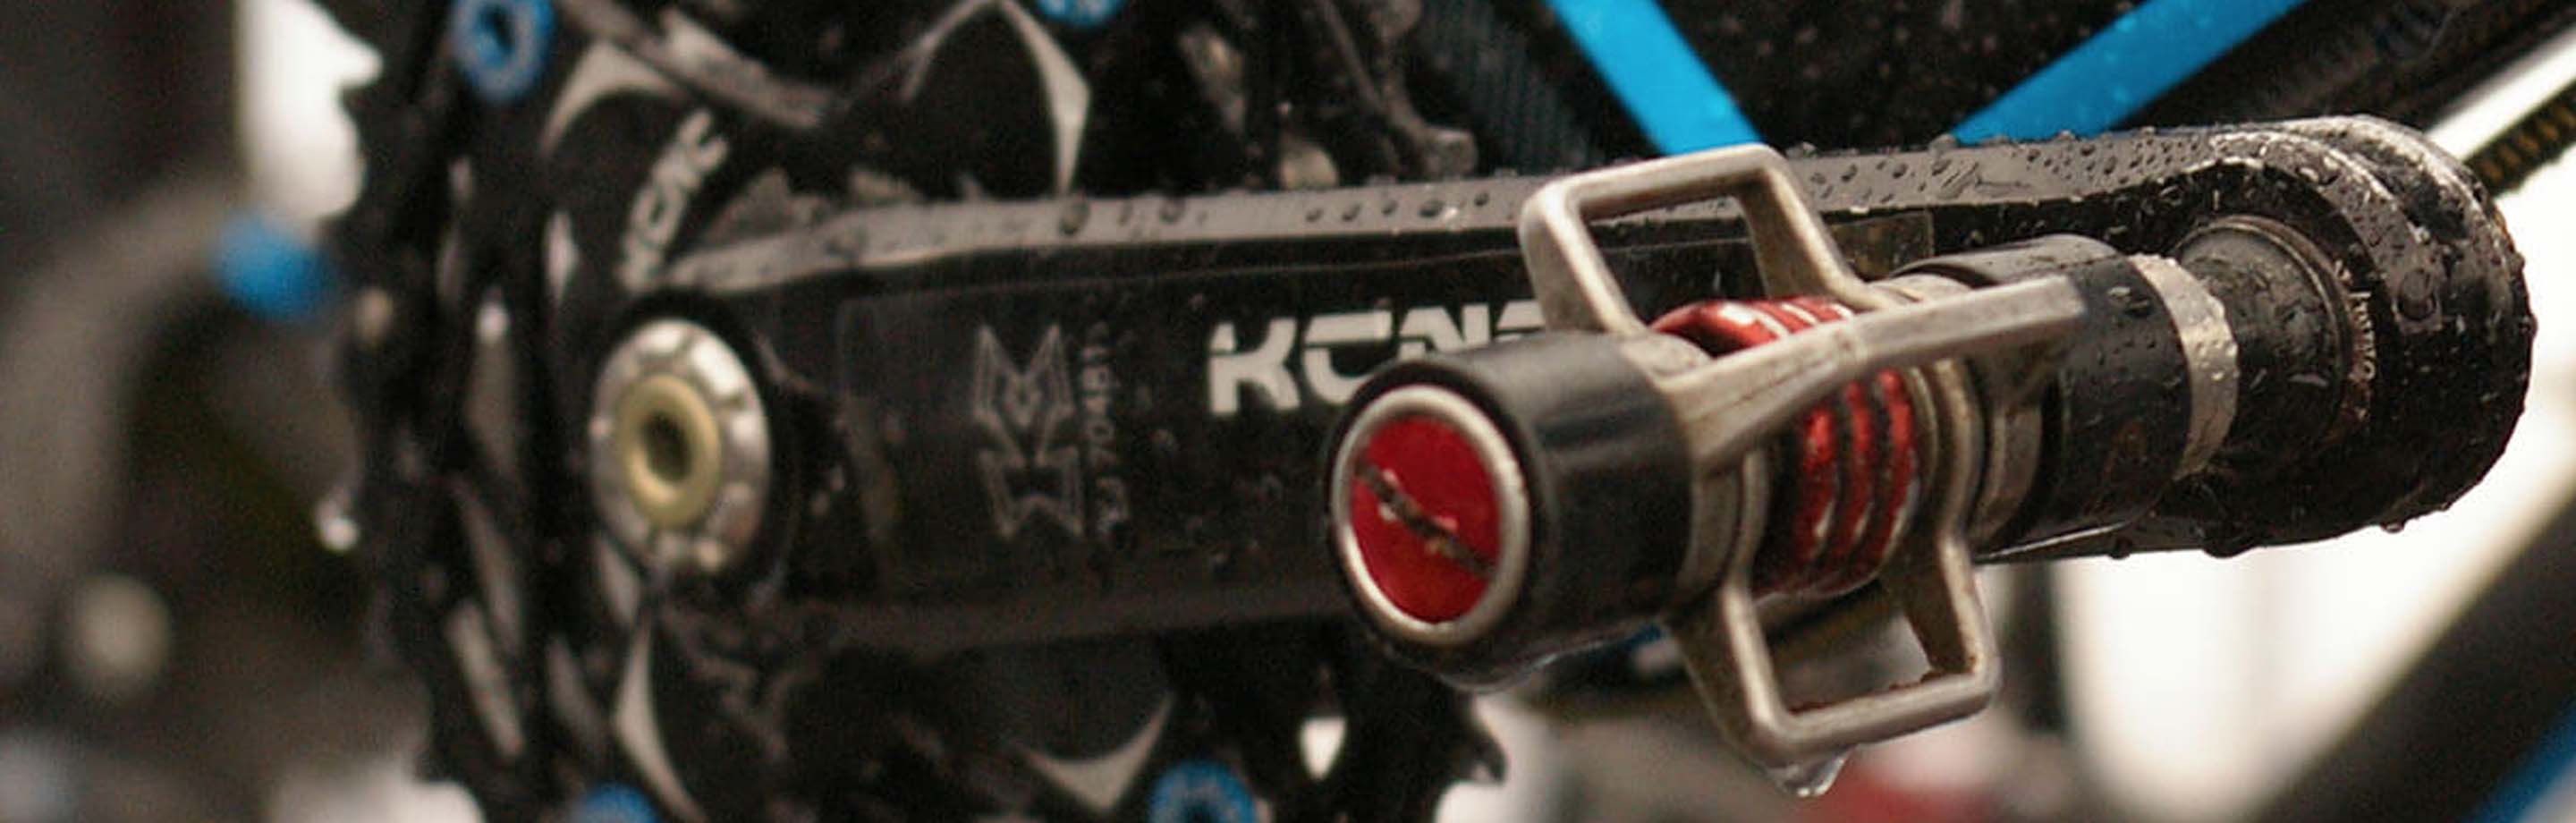 KCNC – Componentes de bicicleta CNC extremadamente ligeros y robustos